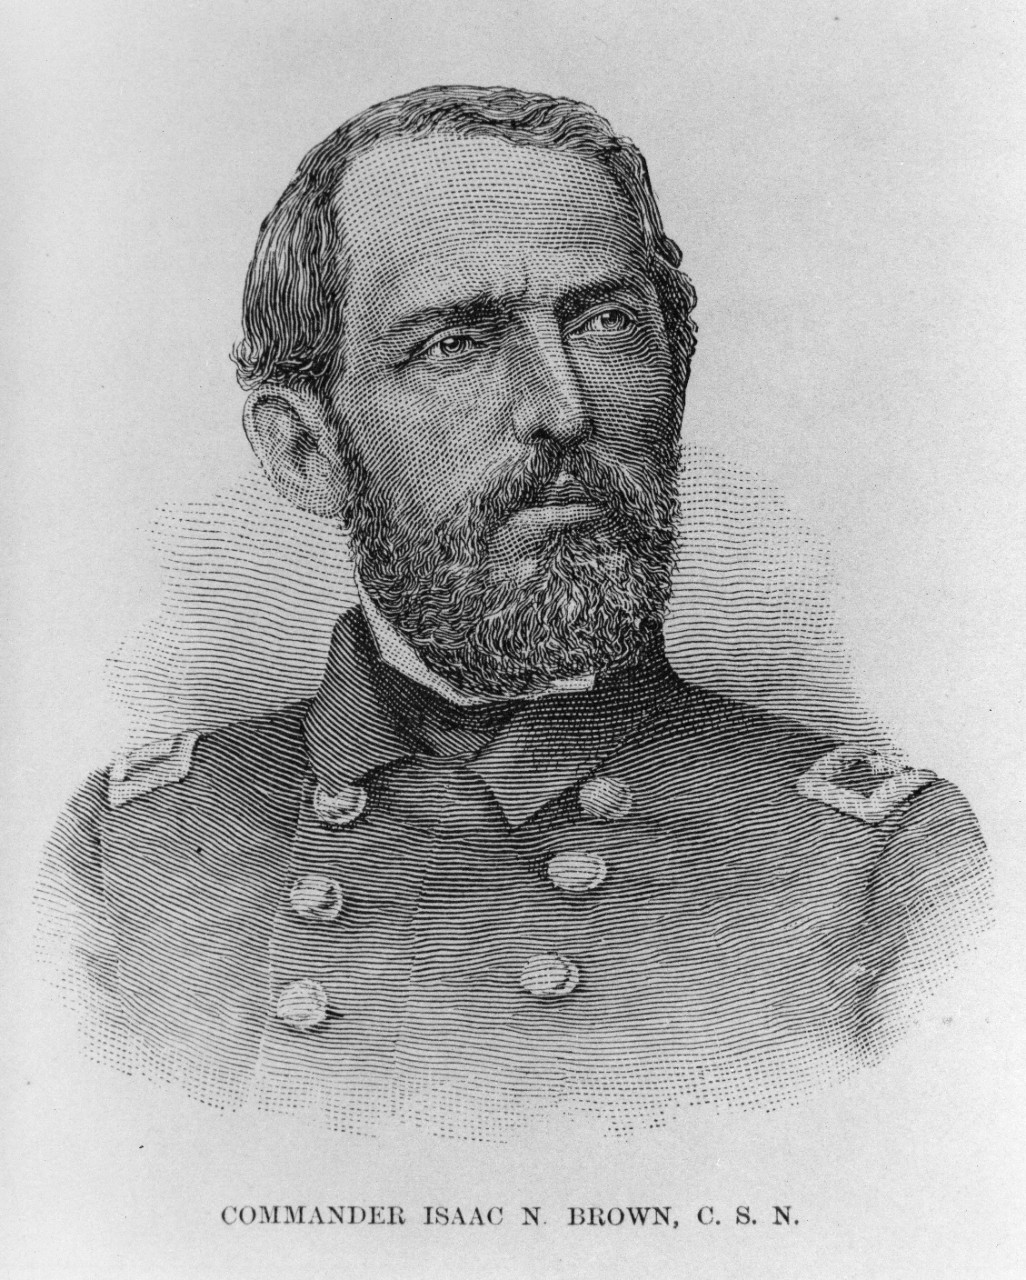 Commander Isaac N. Brown, C.S.N.